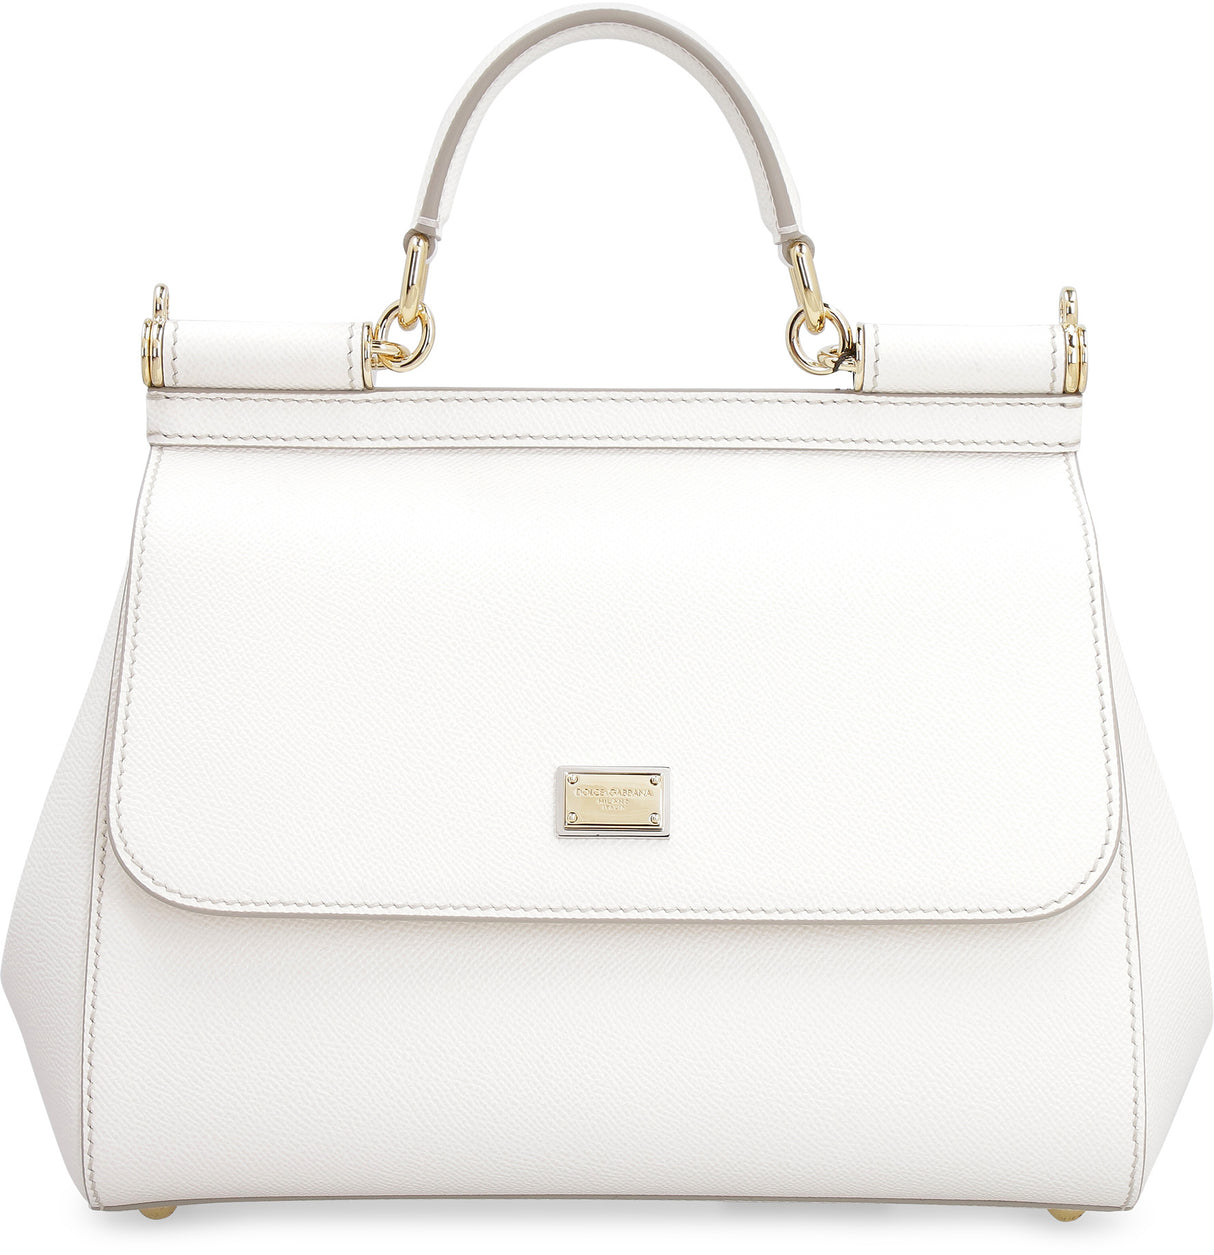 Túi xách trắng thanh lịch dành cho phụ nữ - Kích thước trung bình với quai đeo có thể điều chỉnh